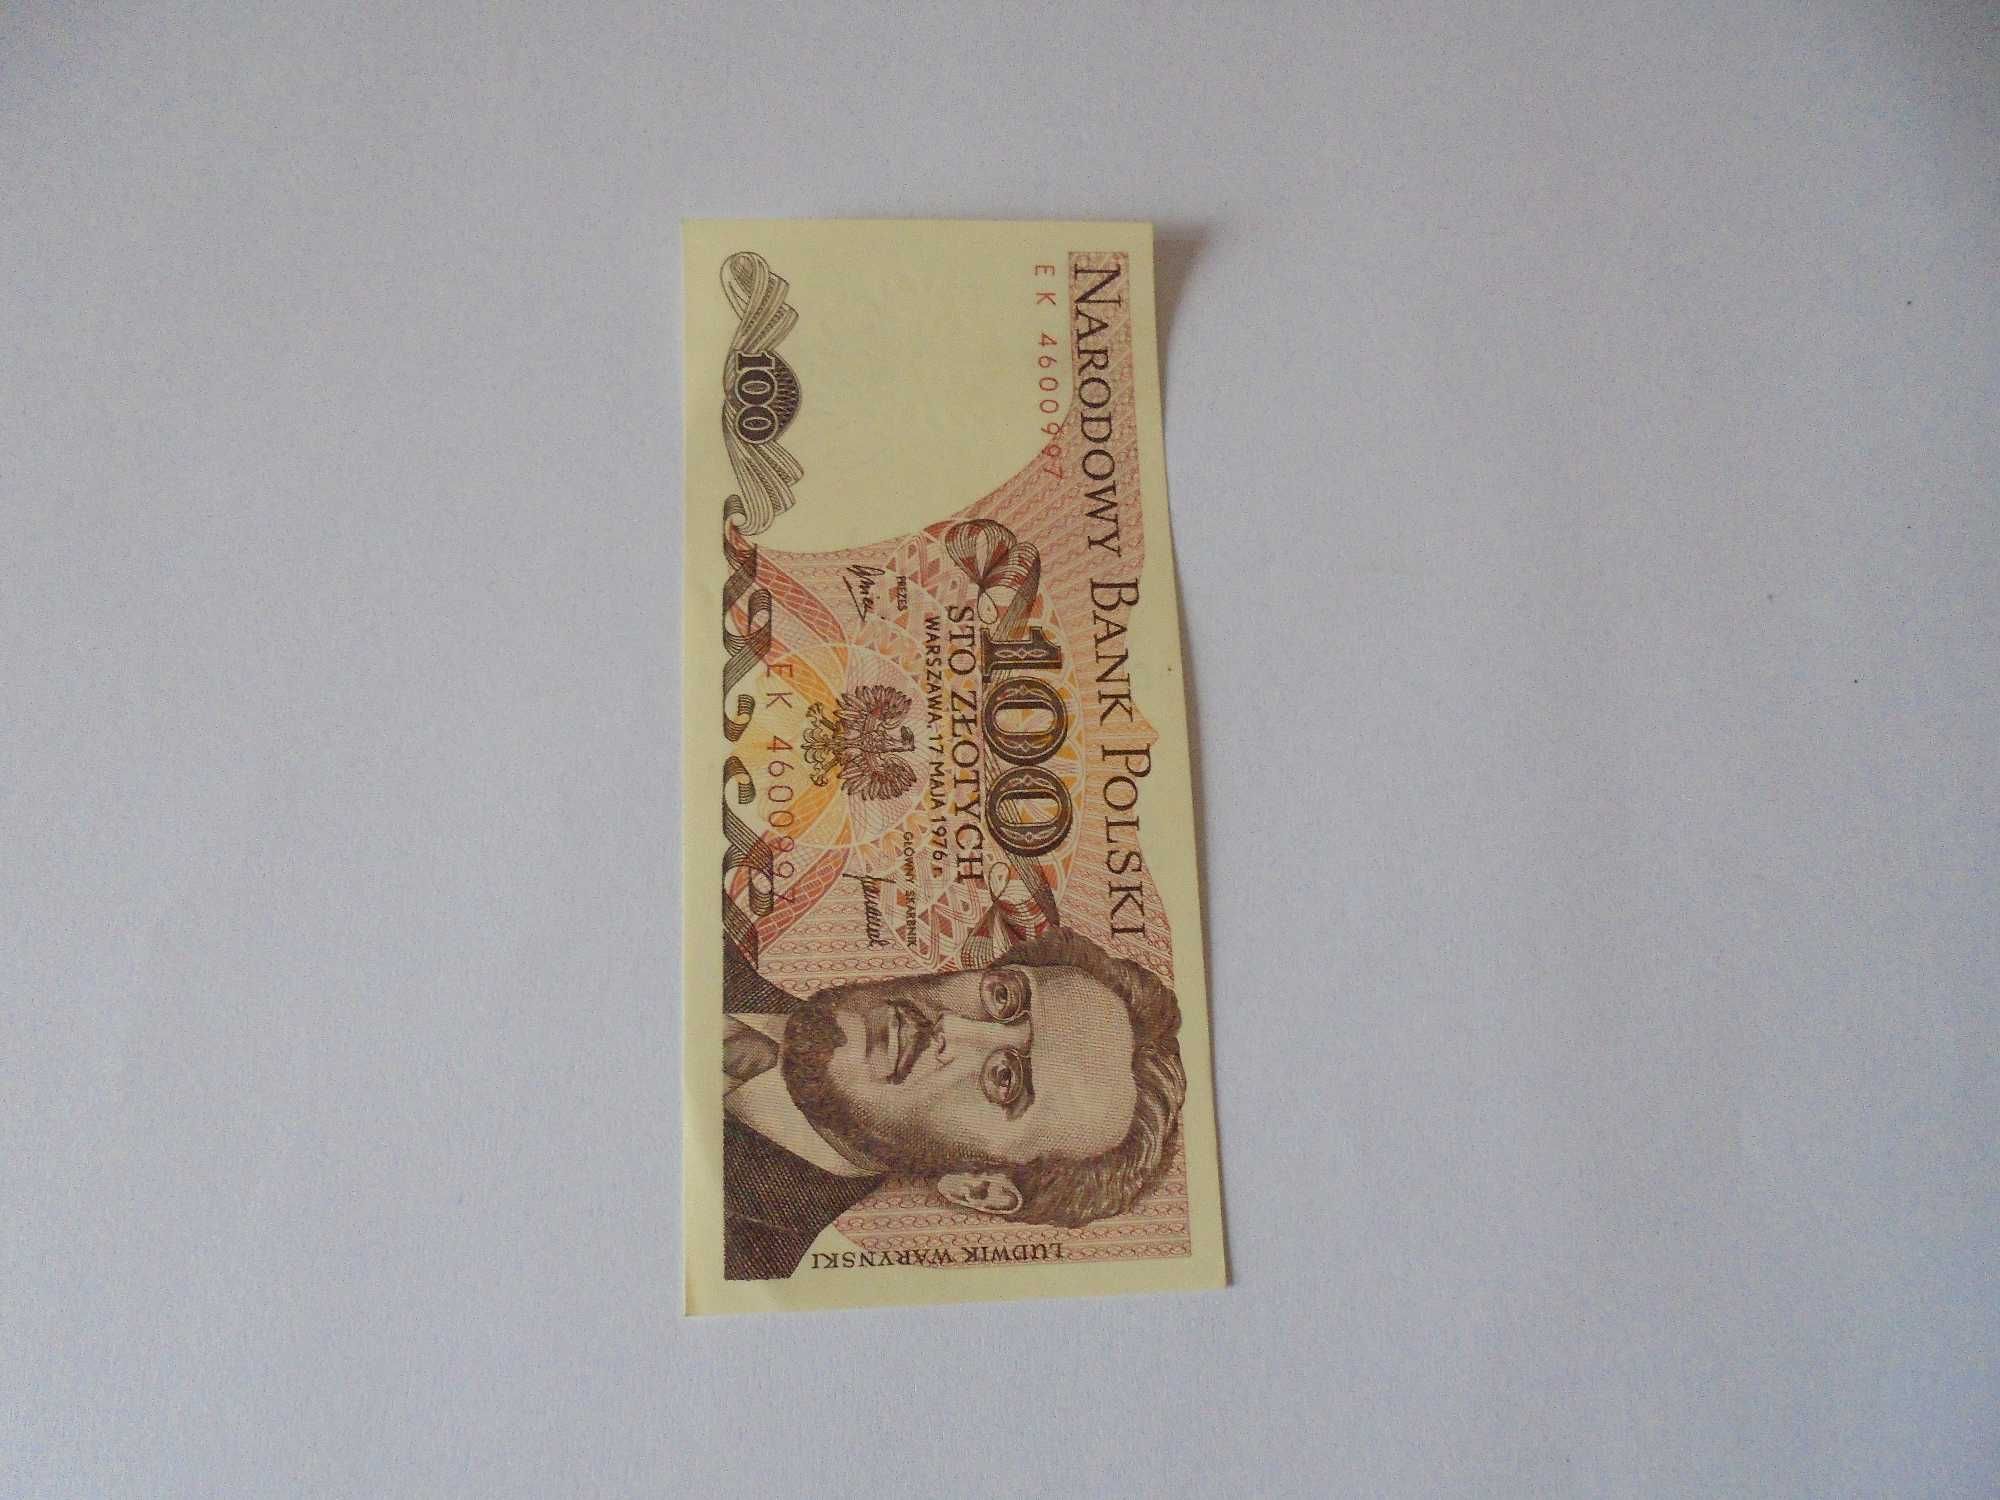 Banknot polski 100 złotych 1976 seria ek 46009xx stan bankowy-UNC b345